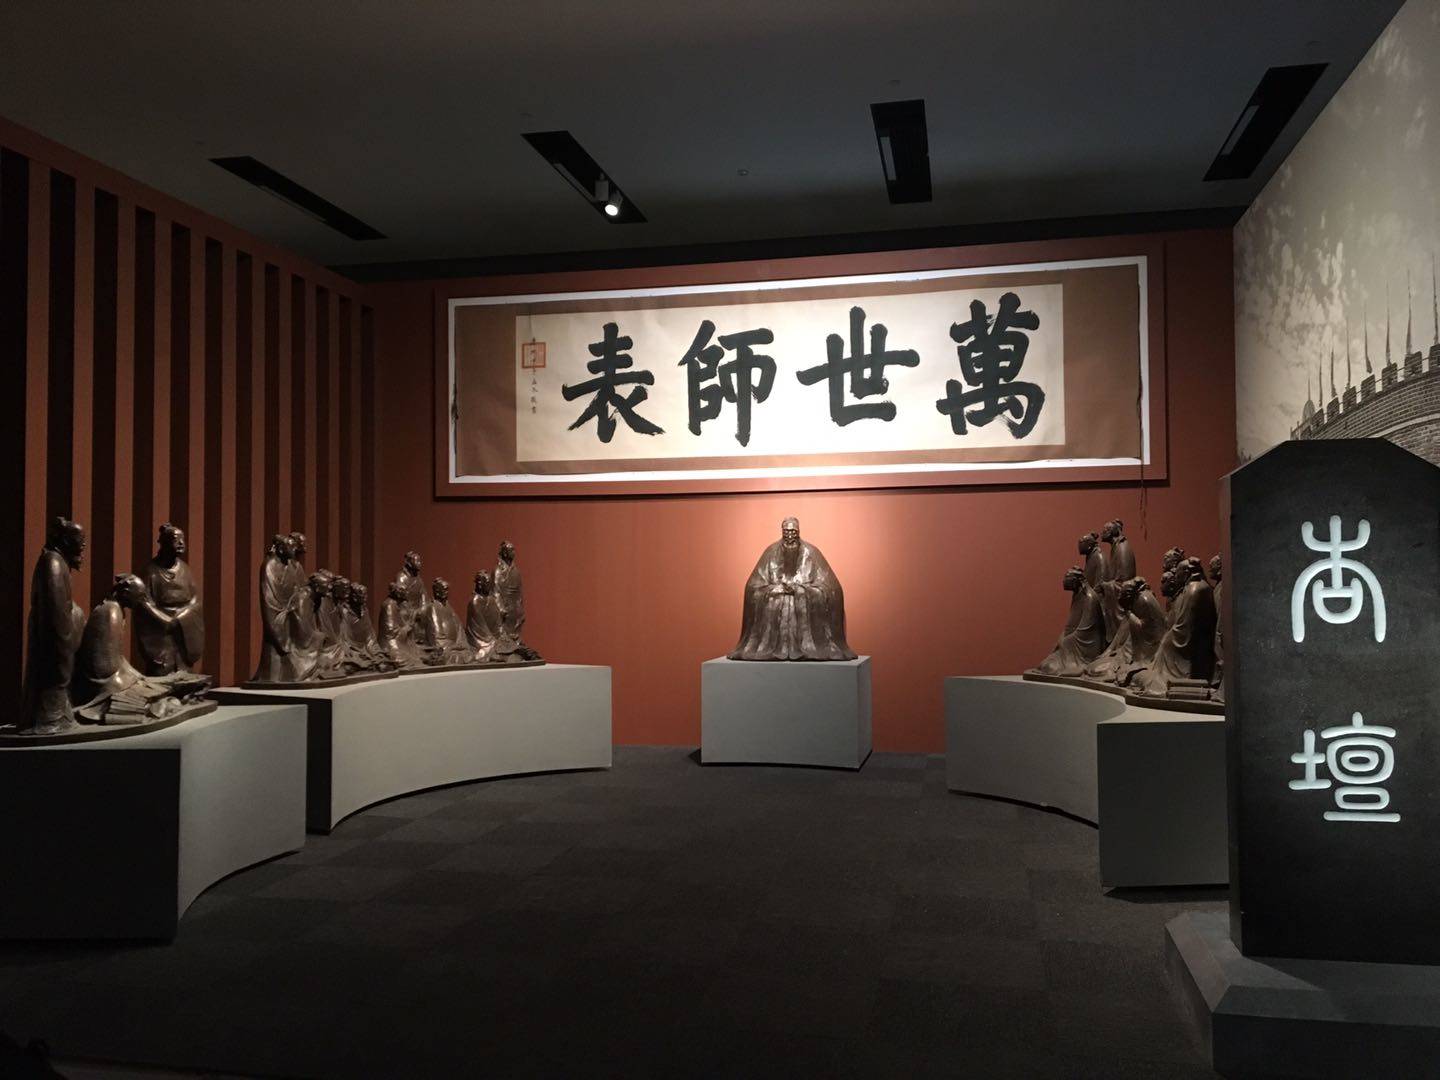 众多珍藏文物亮相国家博物馆  “高山景行——孔子文化展”压轴大展今日开展